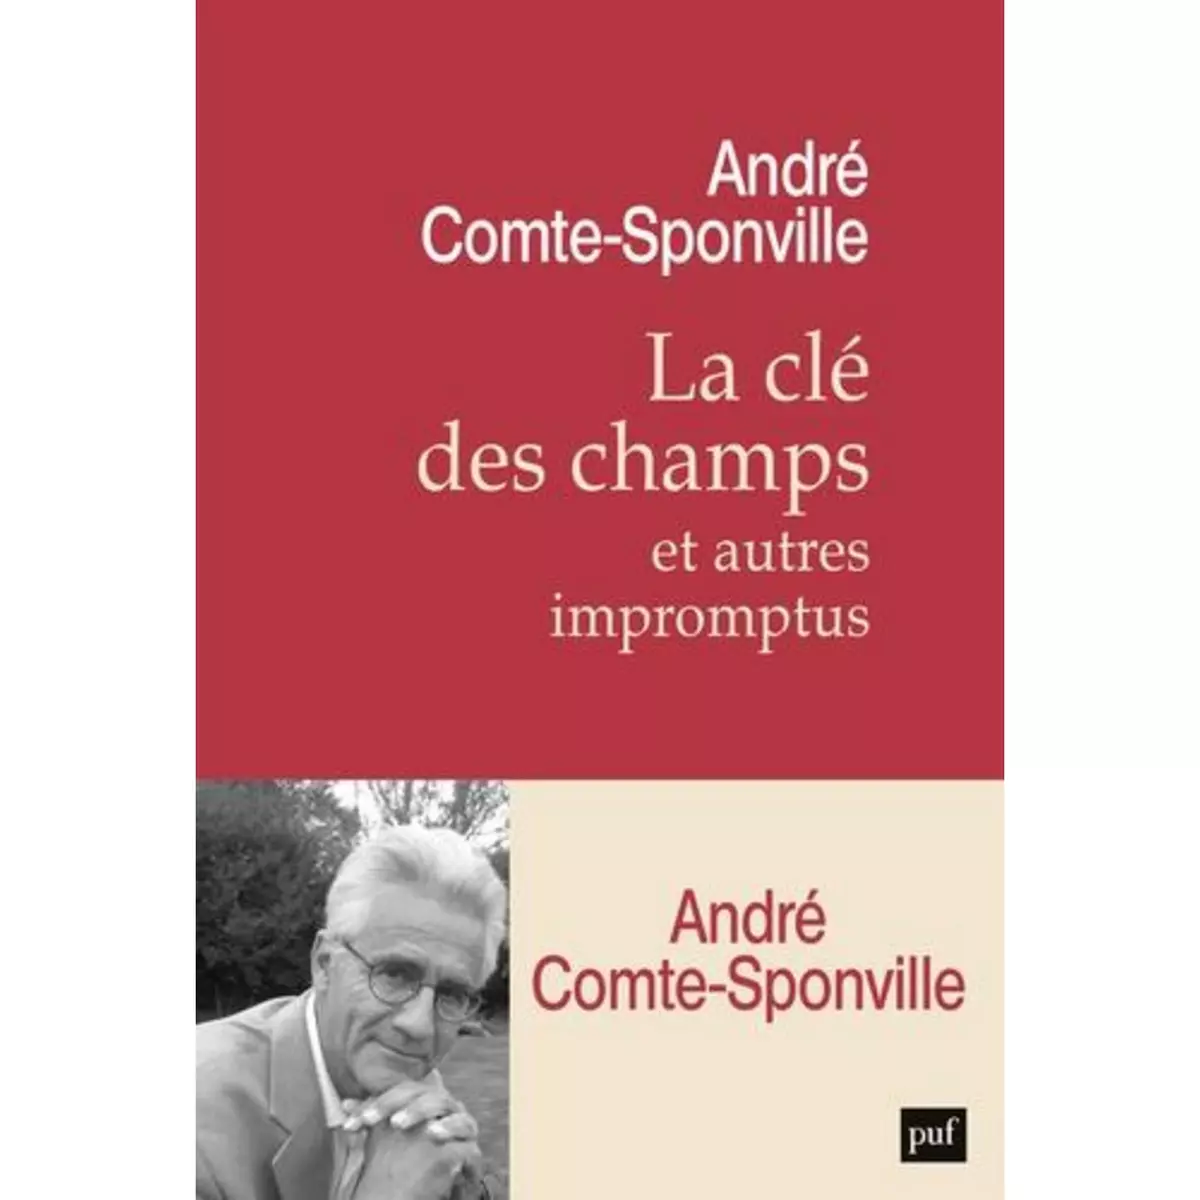  LA CLE DES CHAMPS ET AUTRES IMPROMPTUS, Comte-Sponville André